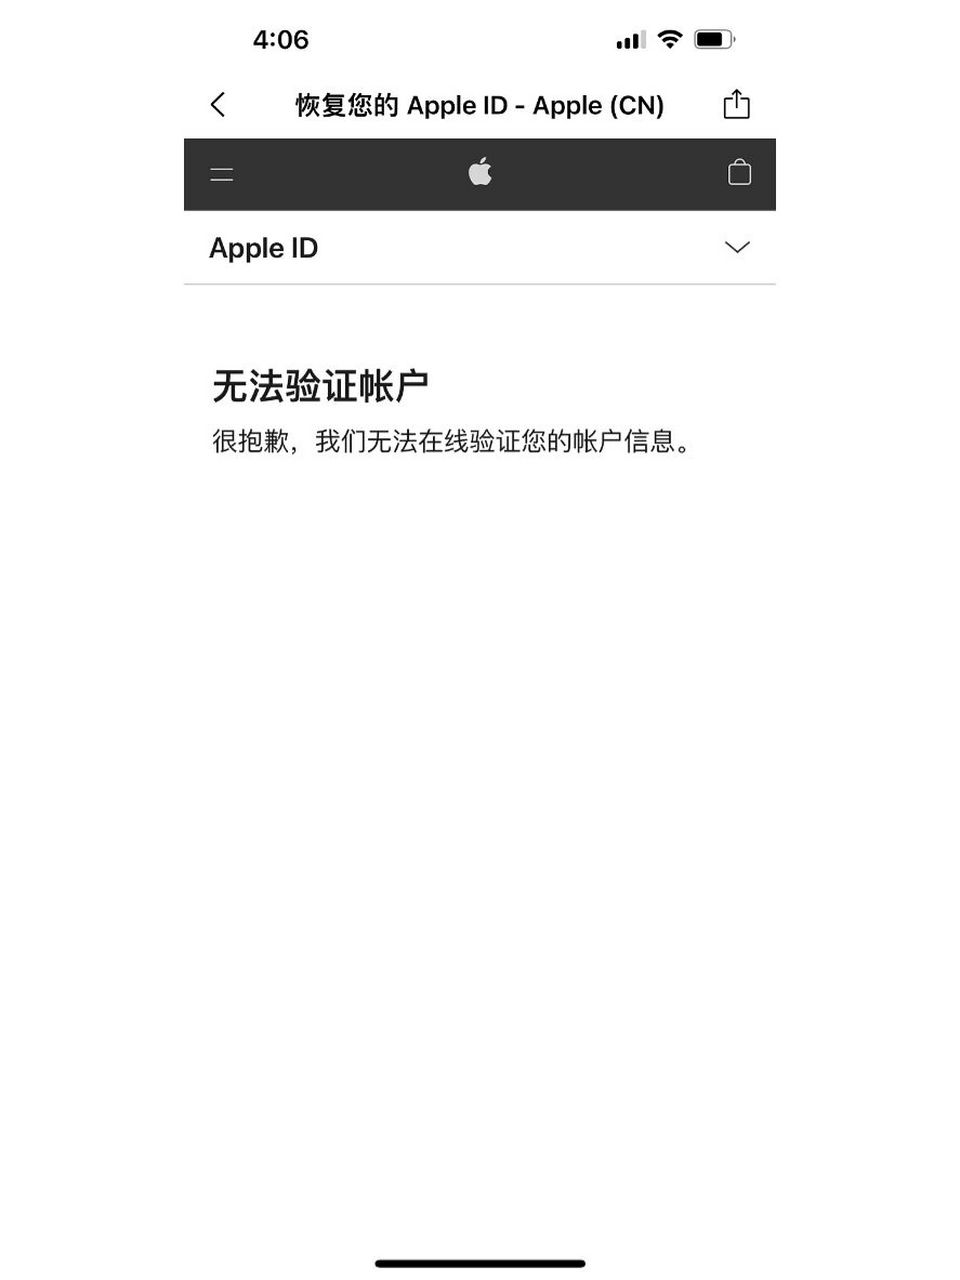 Apple账号被锁定了怎样解除，apple帐号锁定,账户要解锁怎么弄